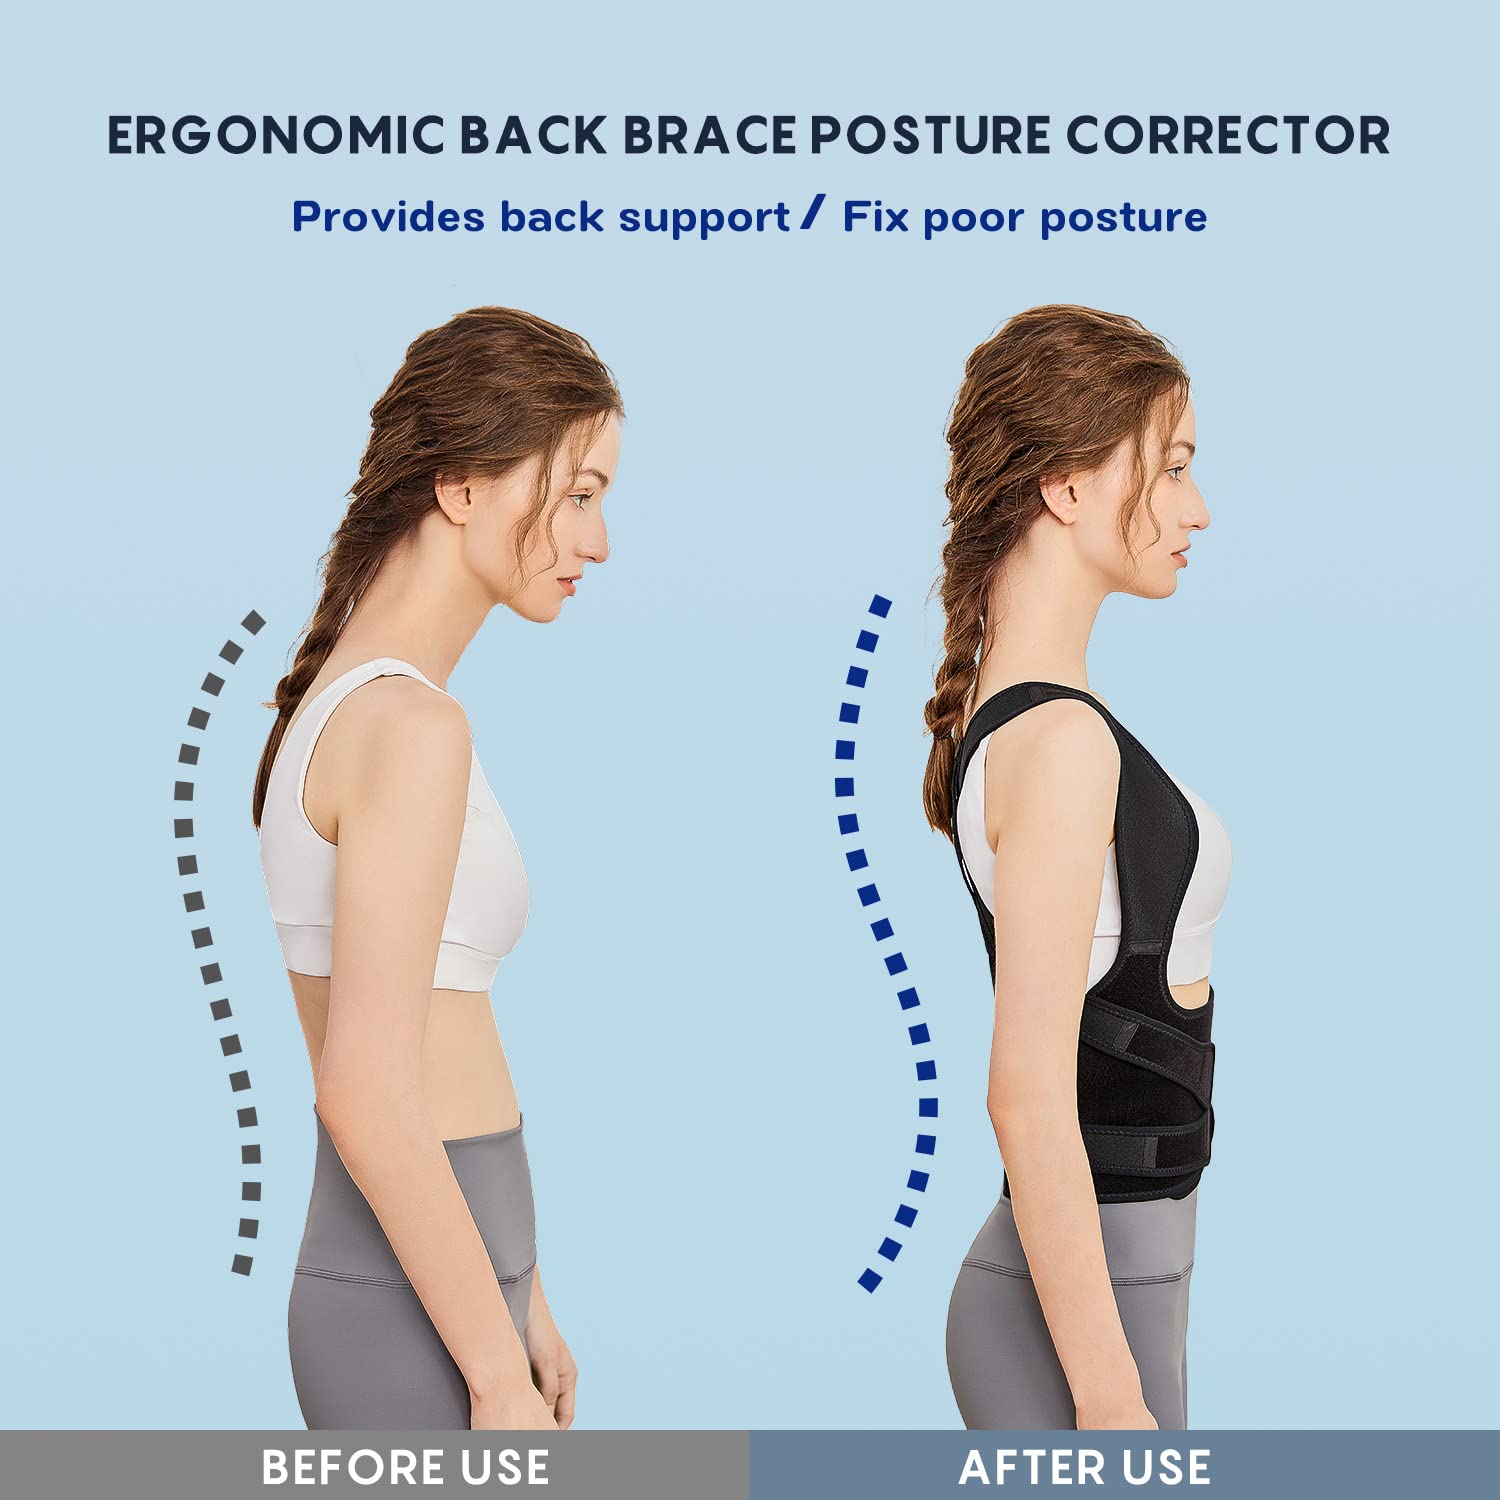 Posture corrector support belt for neck back shoulder pain relief for men  women Back & Abdomen Support (Black) Back Braces